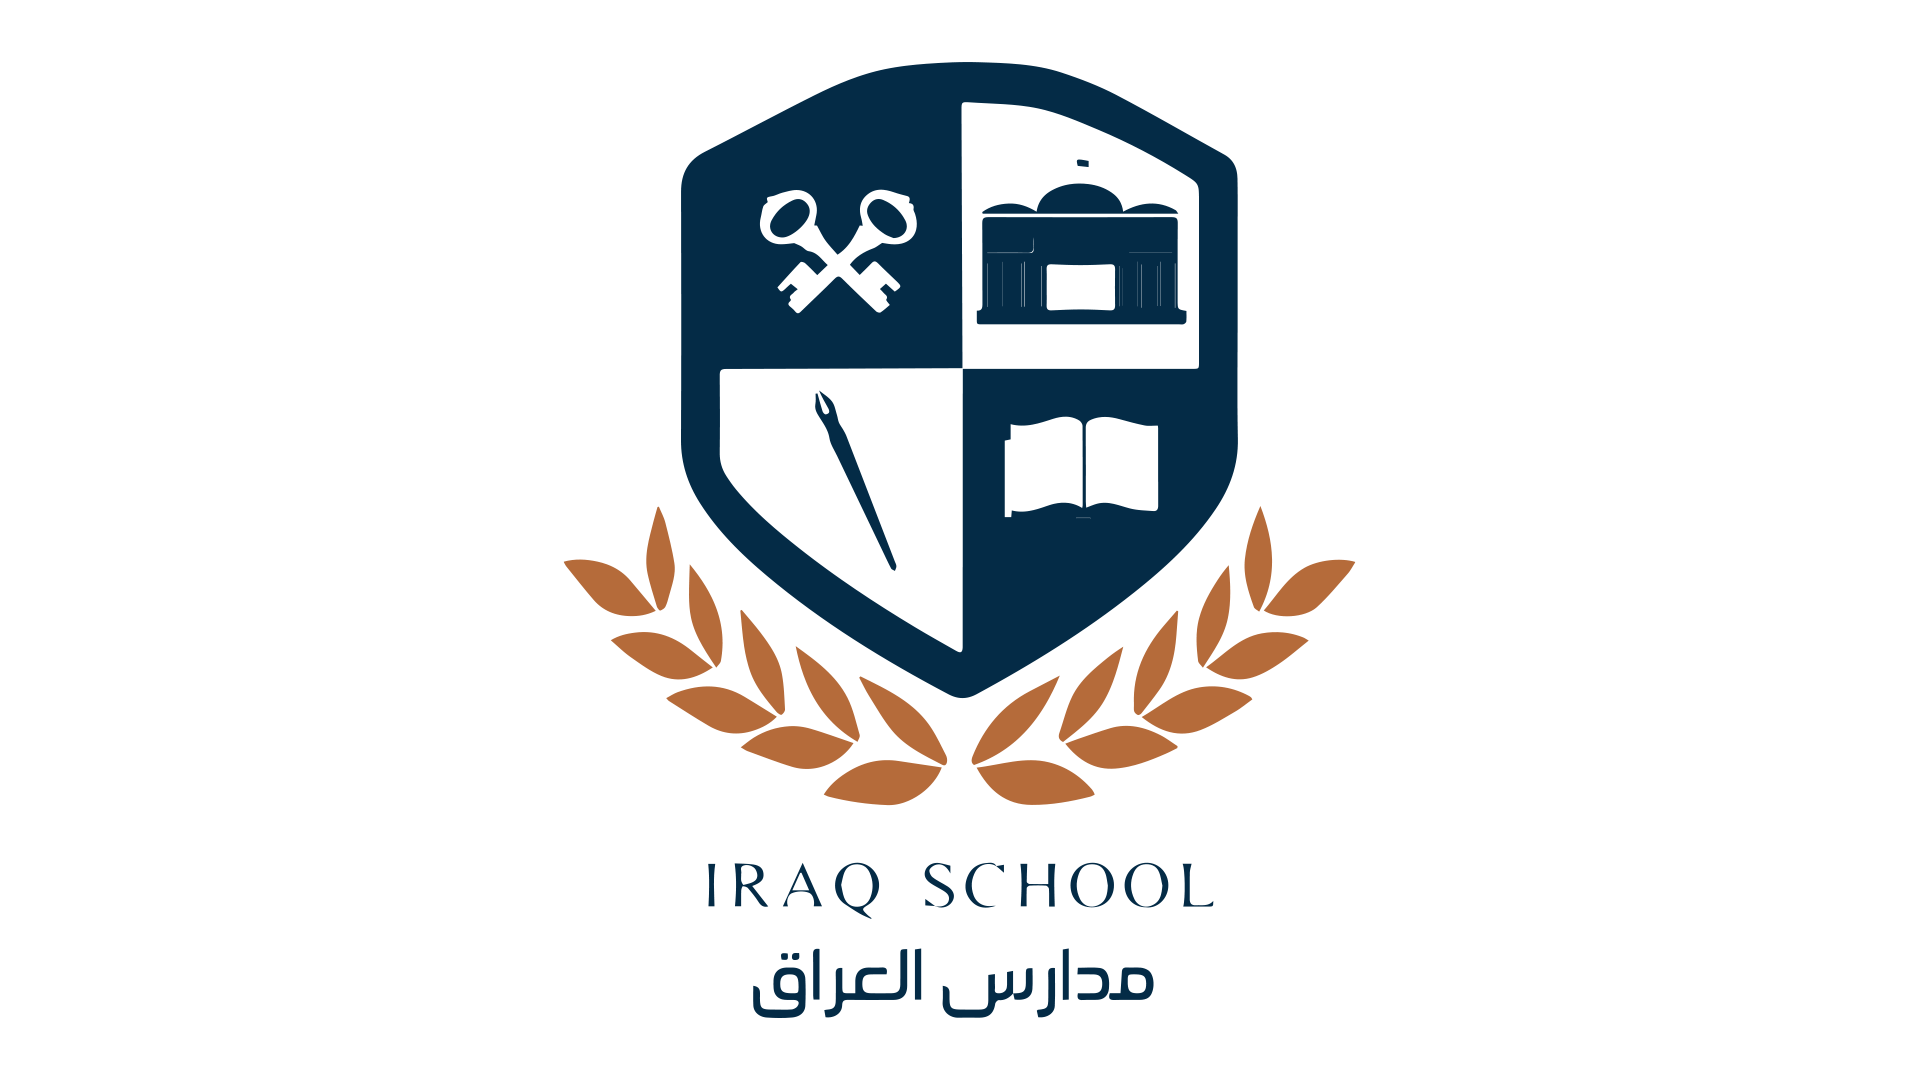 تصميم اعلانات مدارس العراق